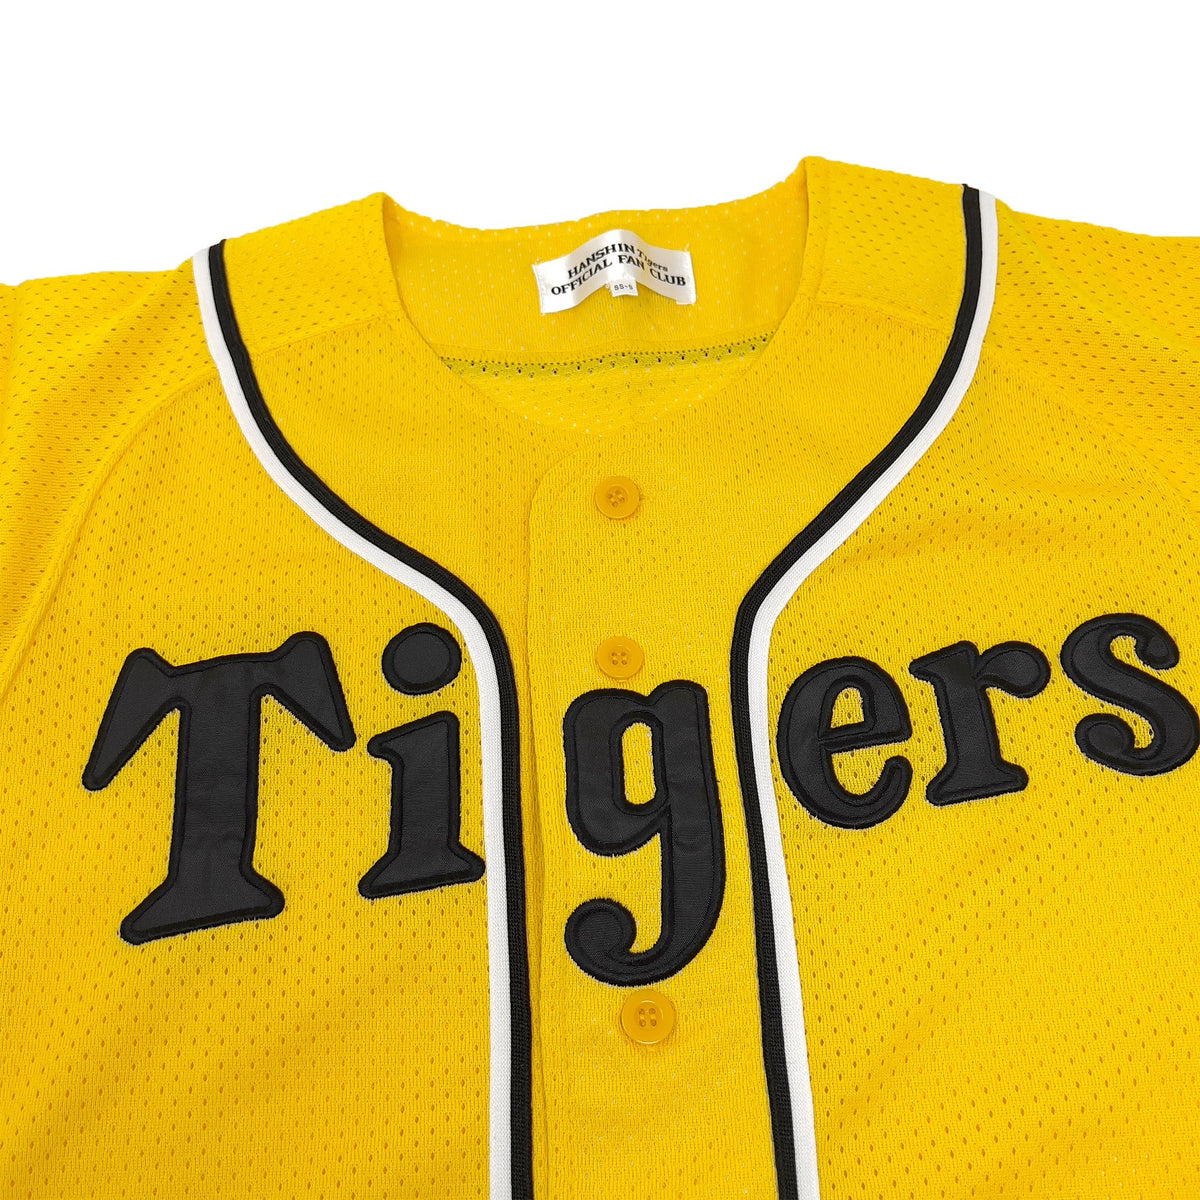 NEW MIZUNO Japan NPB HANSHIN TIGERS Baseball Jersey Yellow/Black MEDIUM